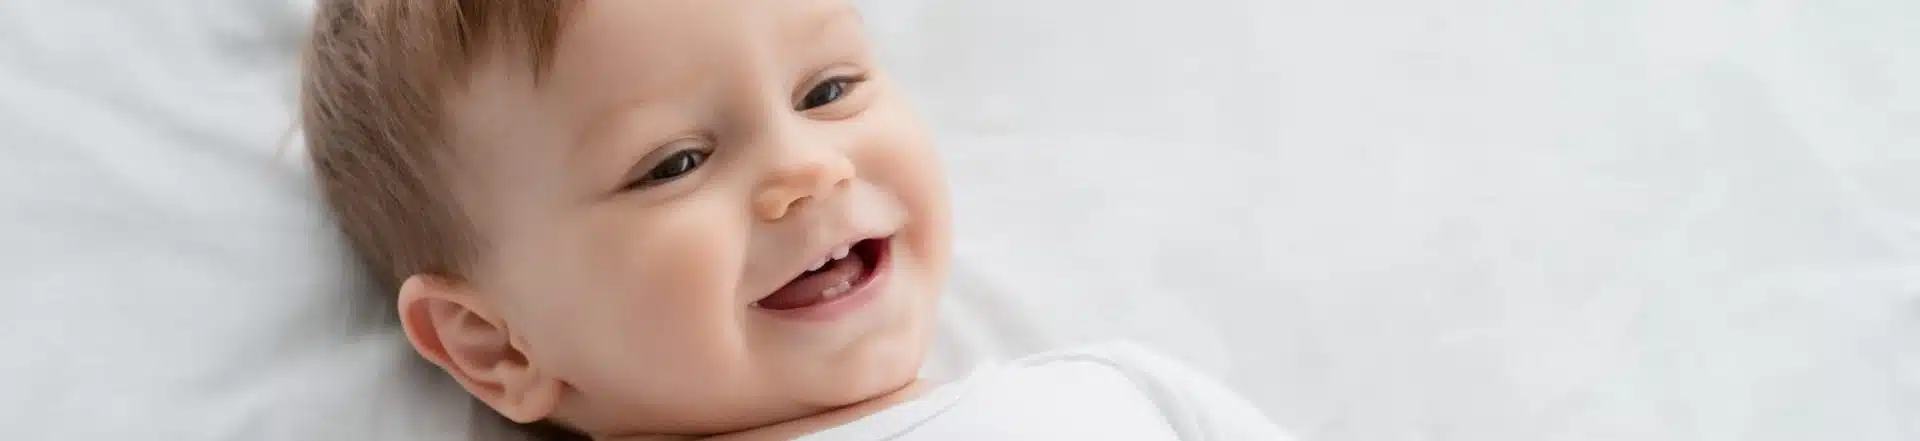 תינוק מחייך